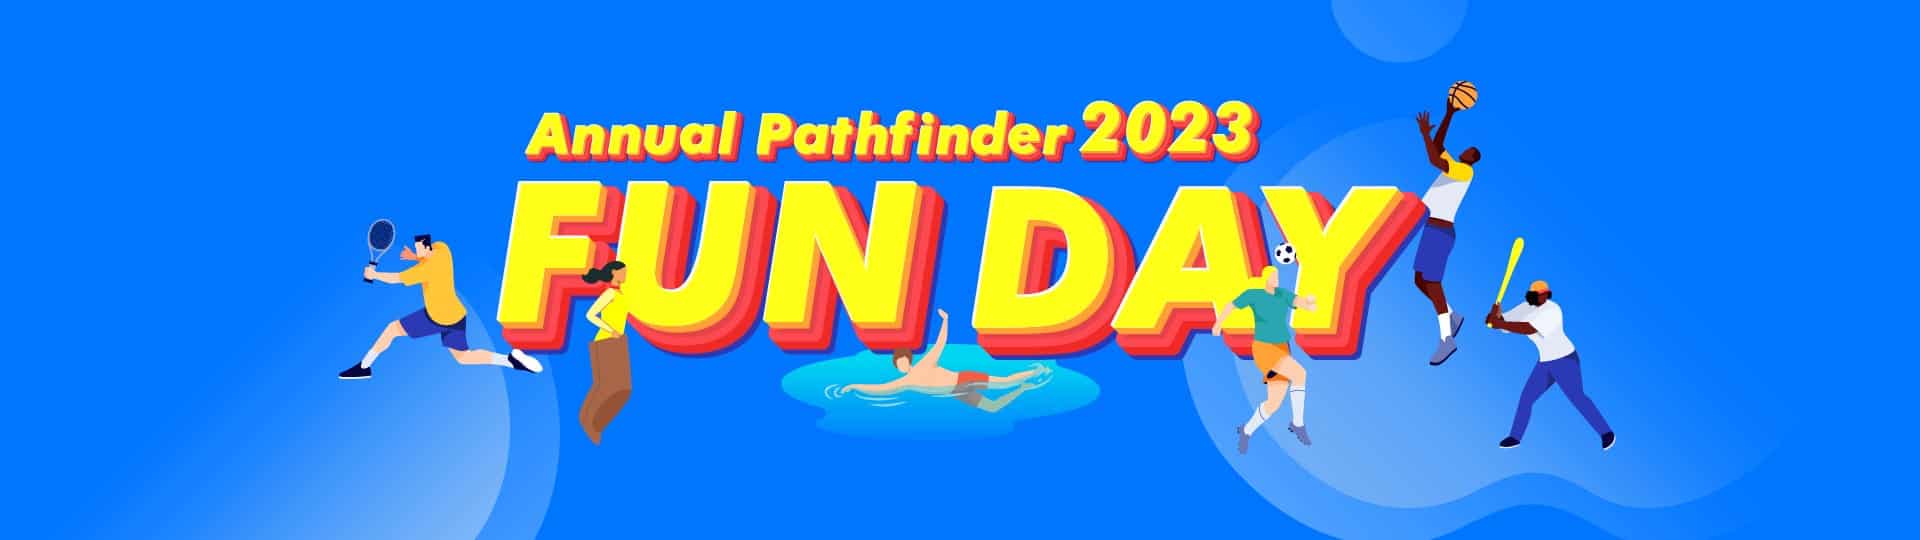 2023 Annual Pathfinder Fun Day